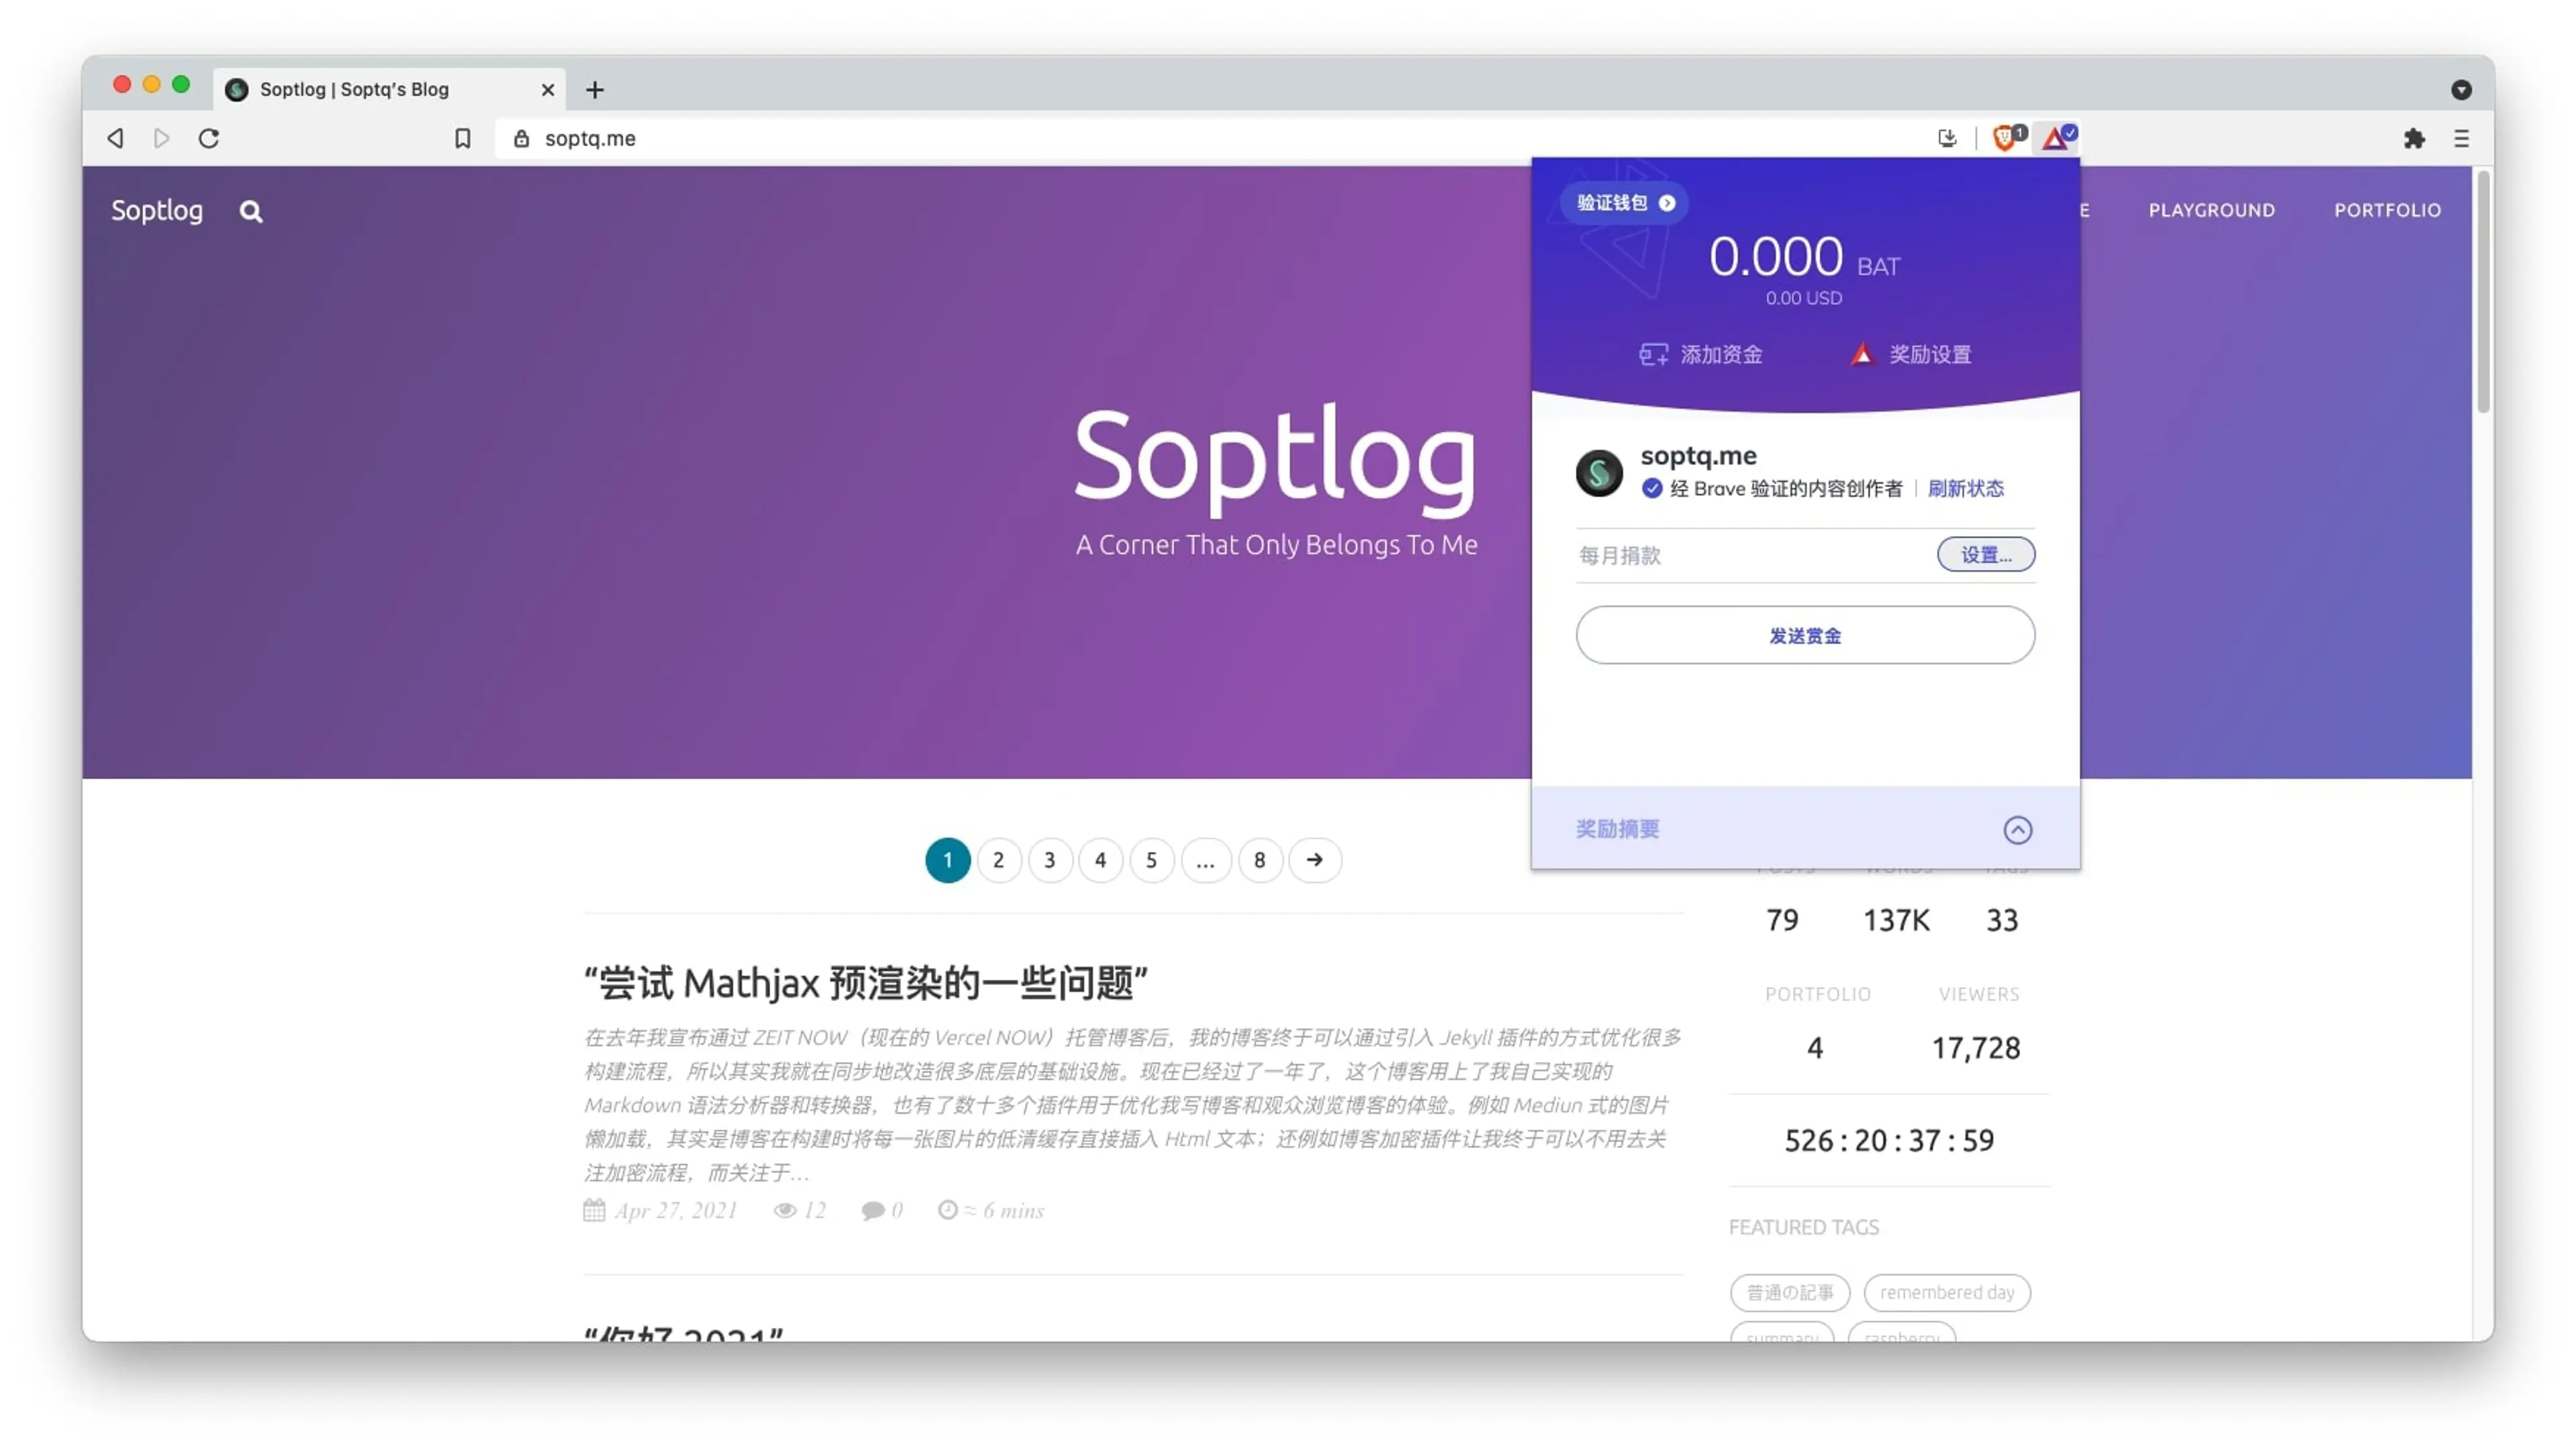 Screenshot of Soptqlog interface